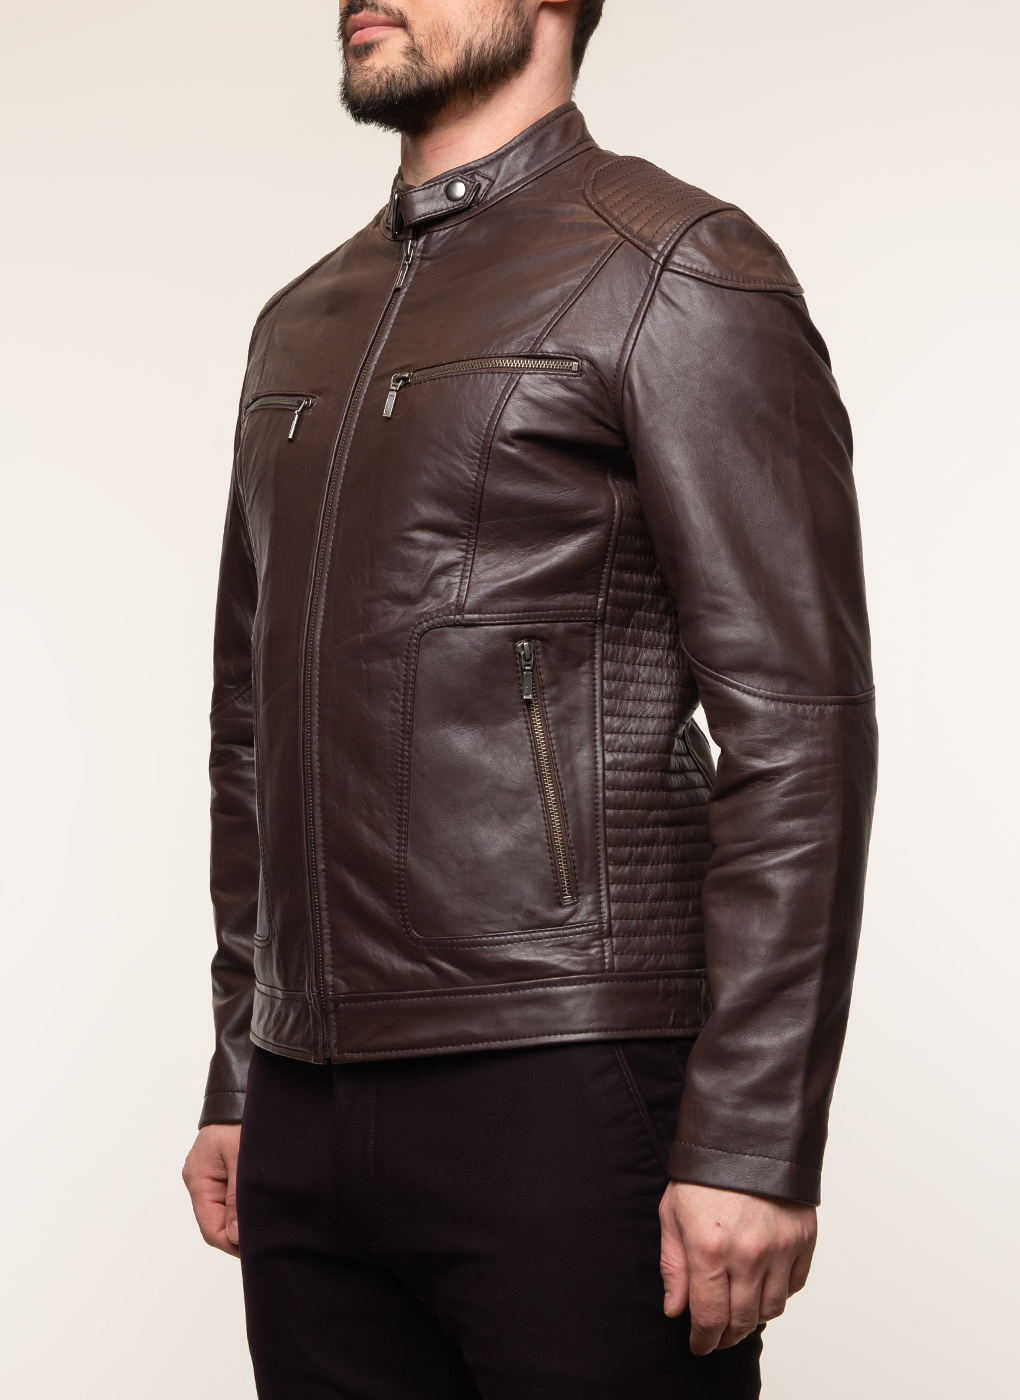 Кожаная куртка мужская Каляев 62648 коричневая 56 RU